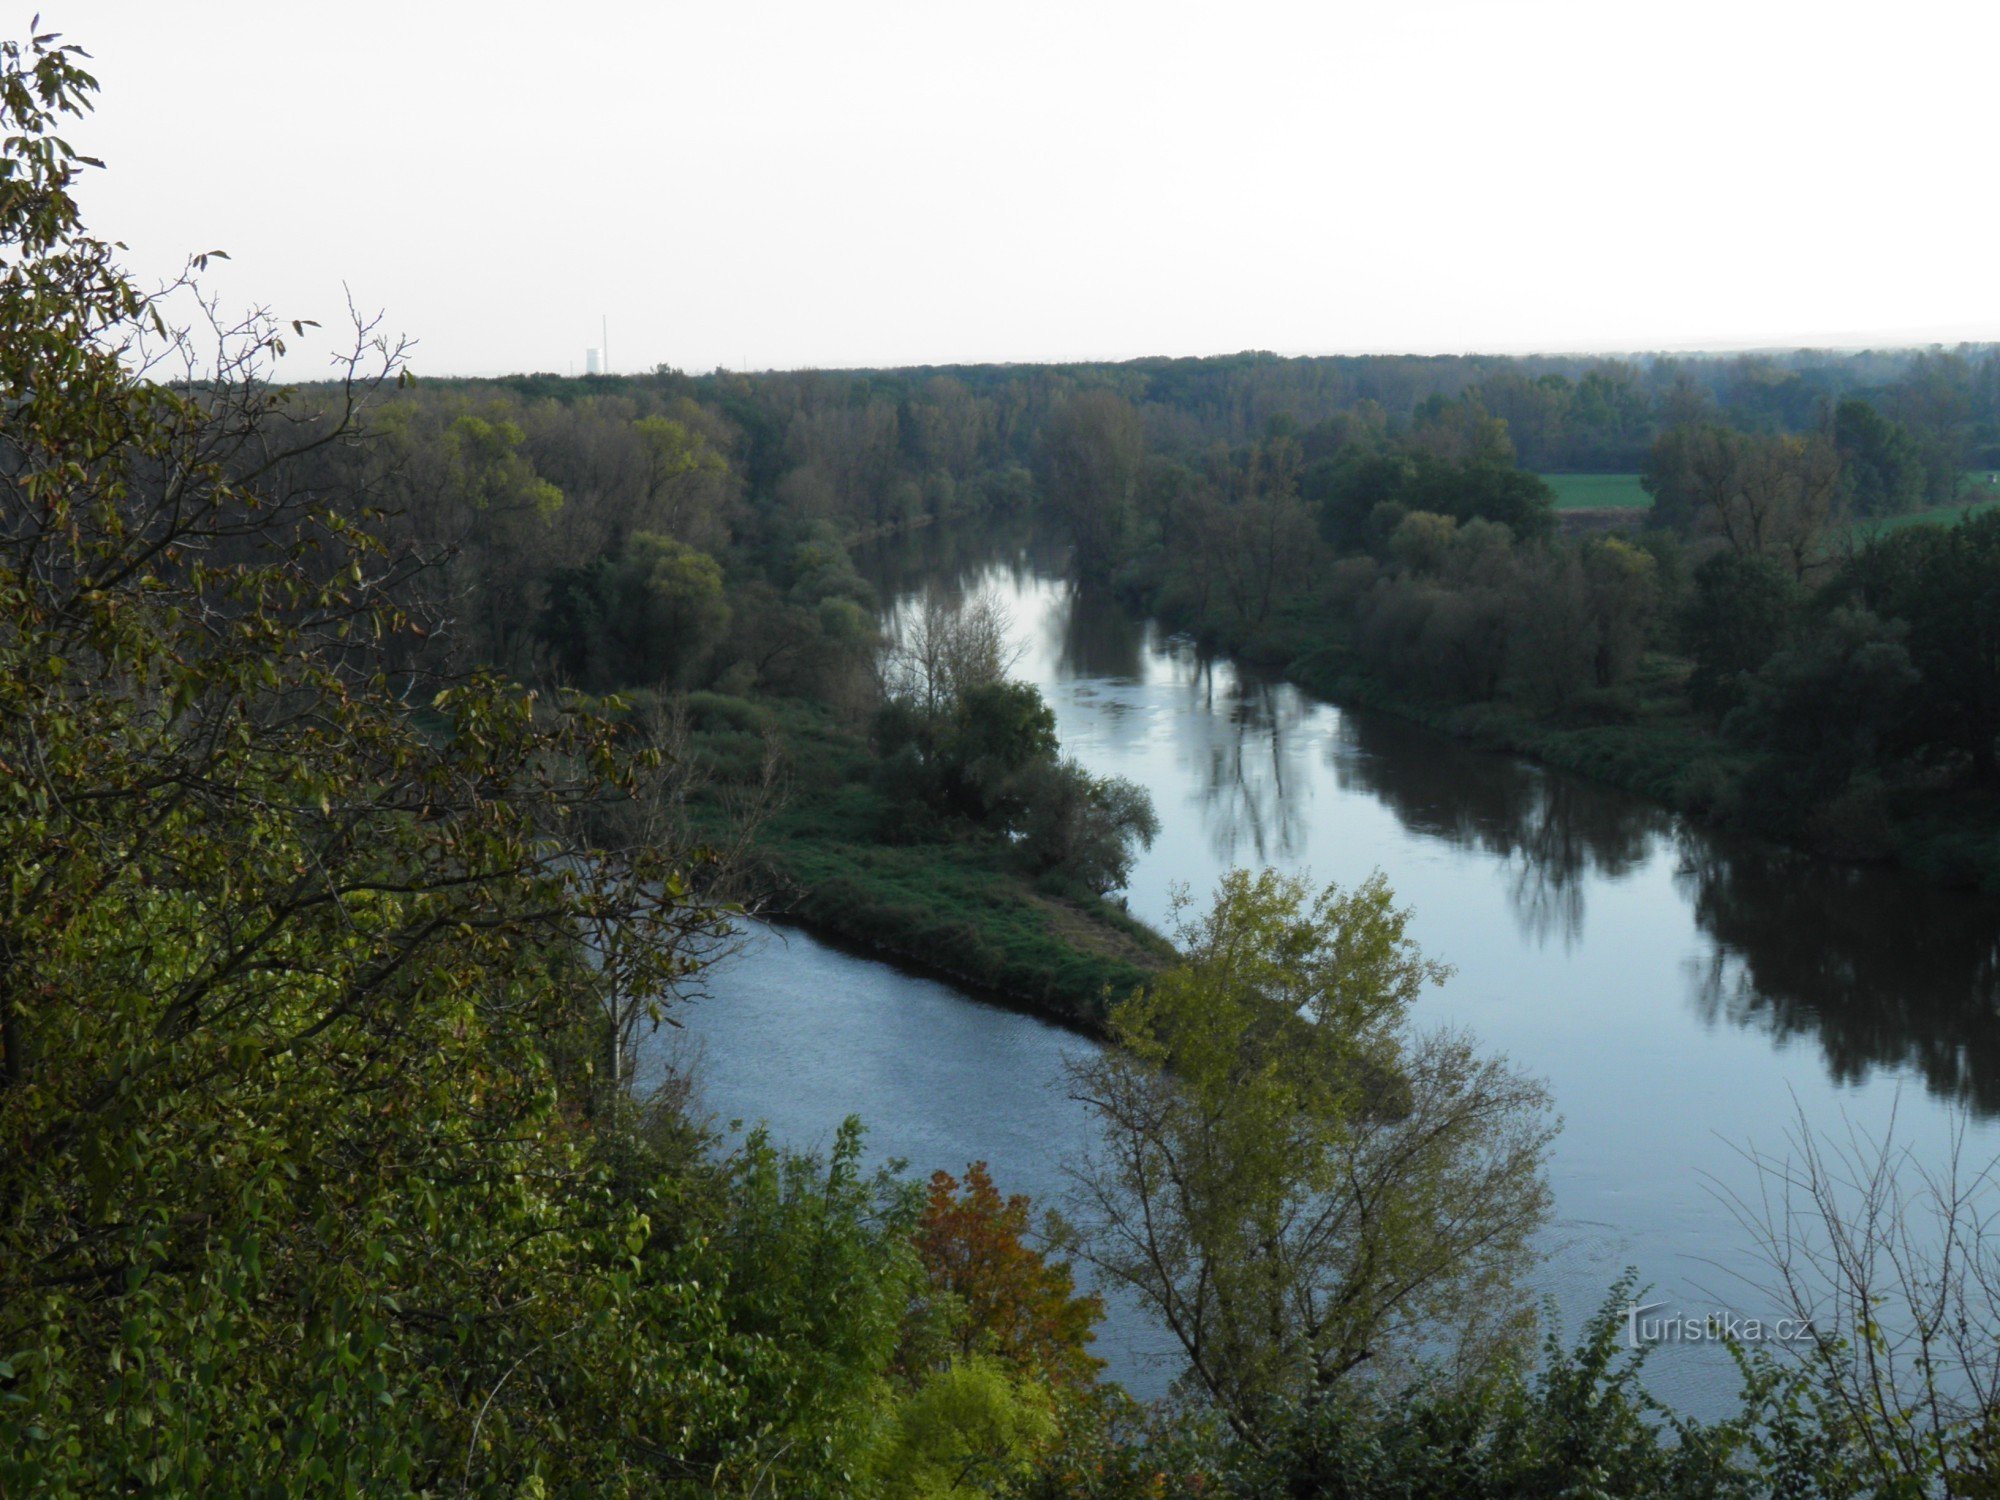 エルベ川とヴルタヴァ川の合流地点。